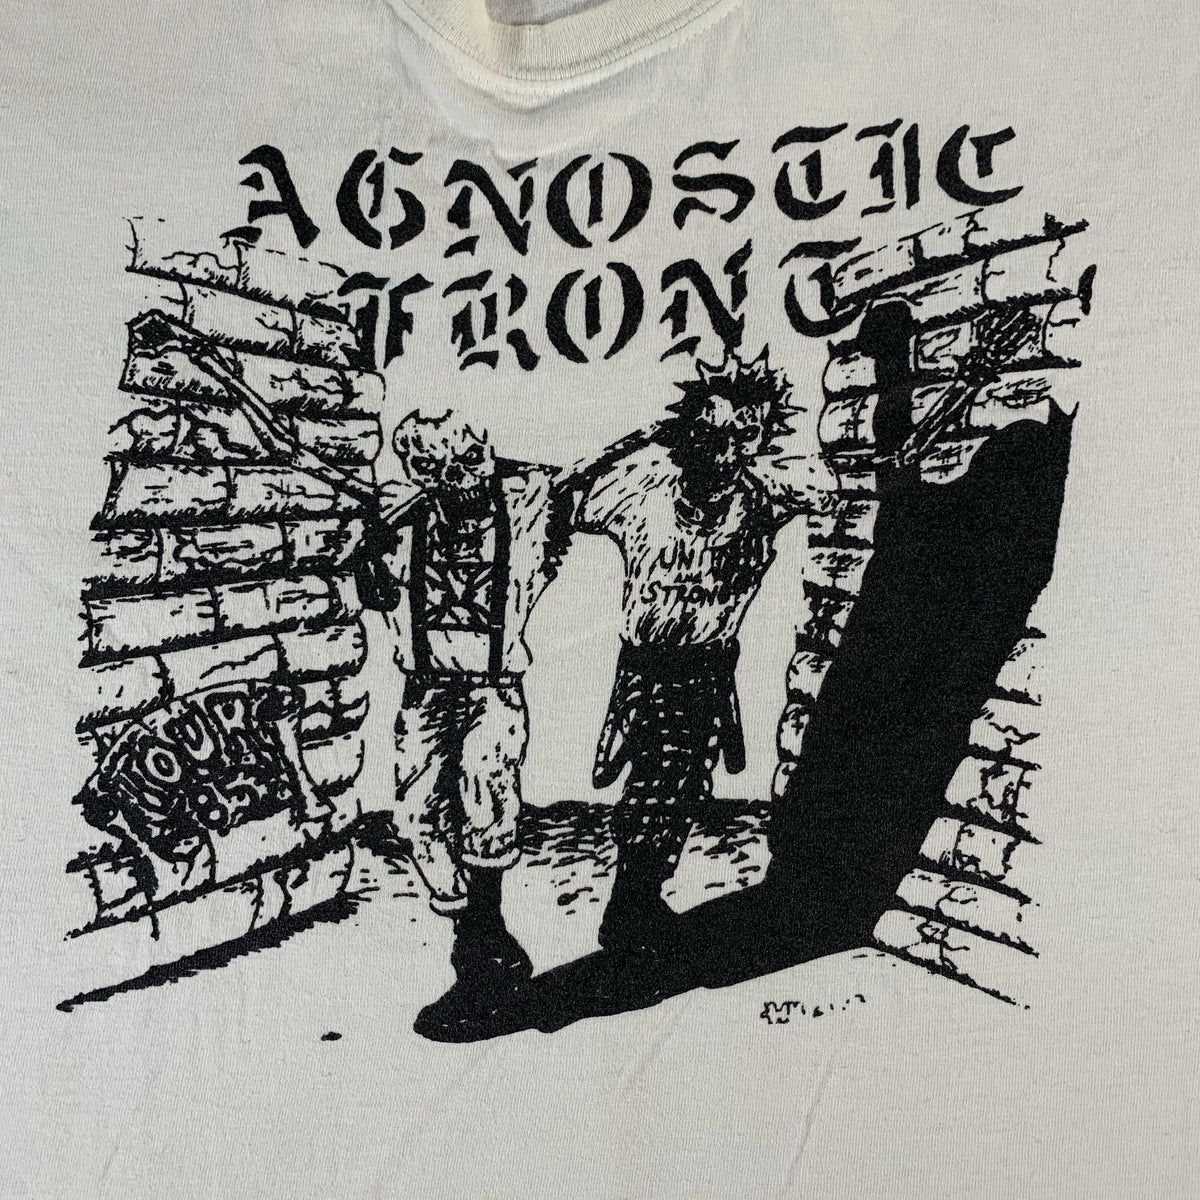 Vintage Agnostic Front United Blood 1985 Tour Shirt Reprint Graphic Detail